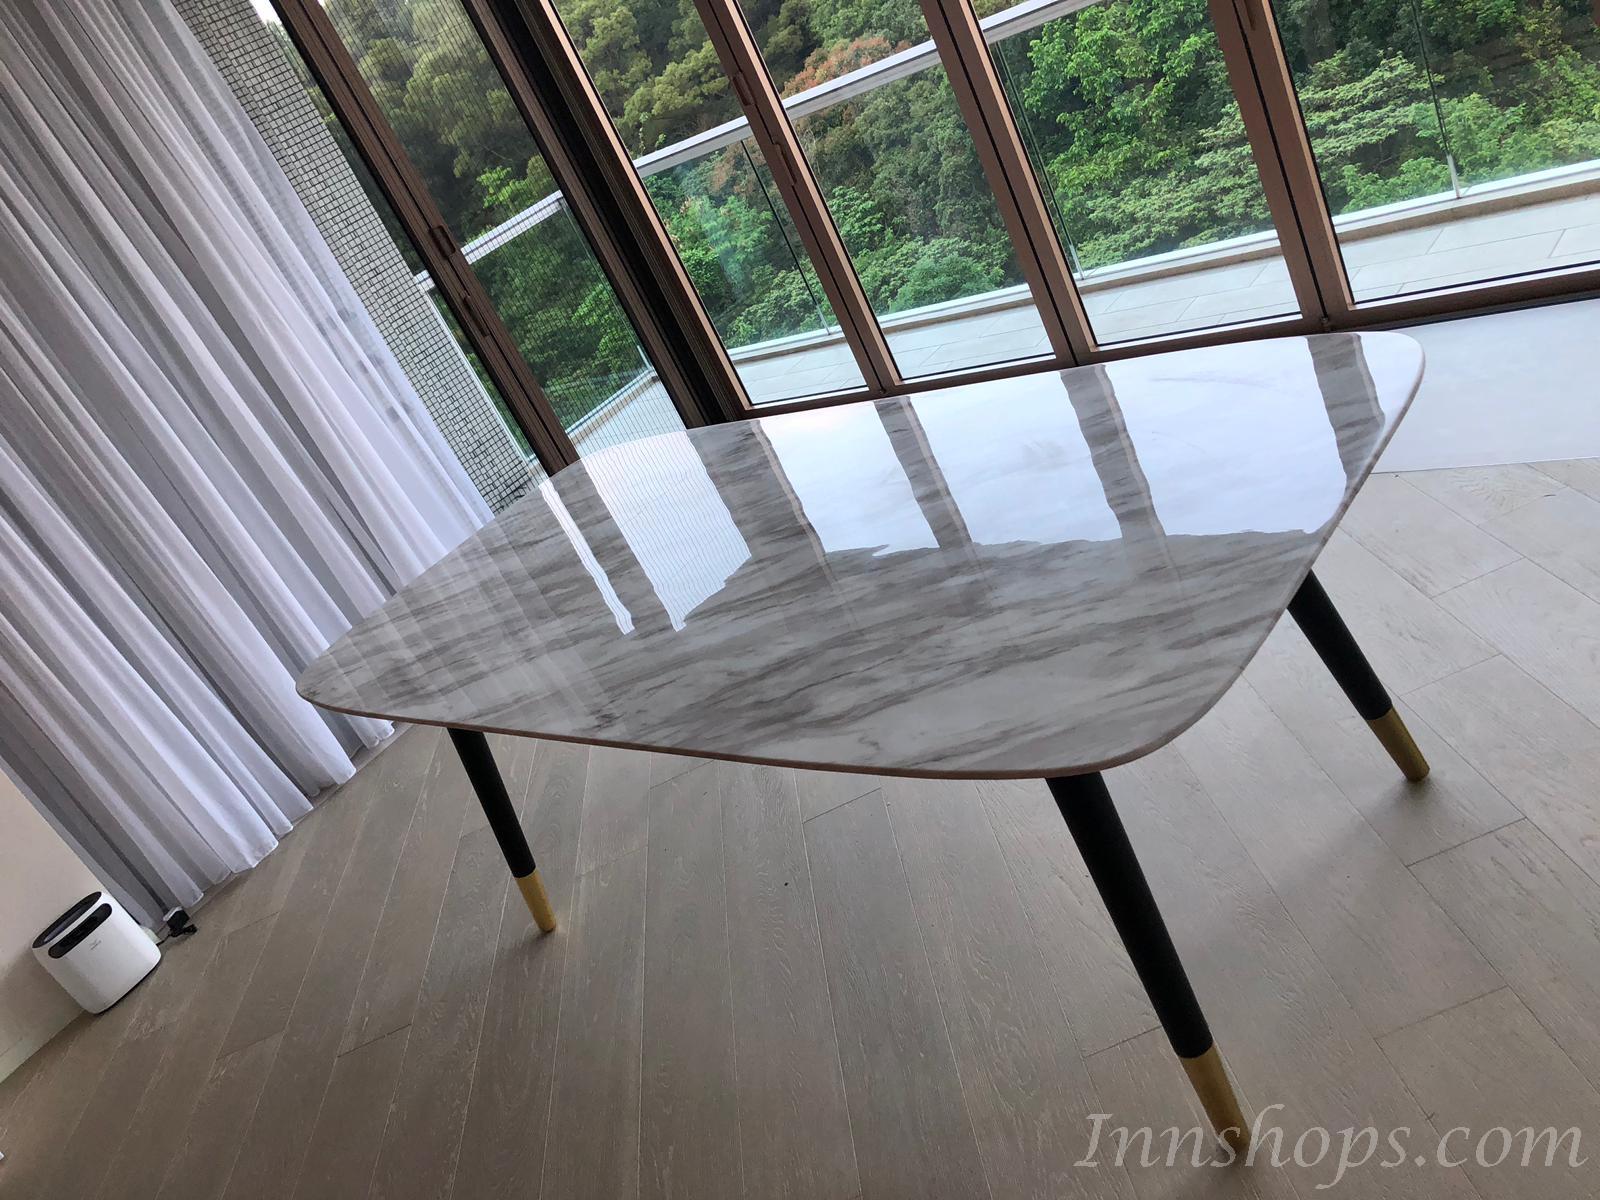 意式氣派系列 大理石木腳餐桌椅子 *4呎3/ 4呎7 / 5呎3 / 6呎 / 6呎7 (IS6714)